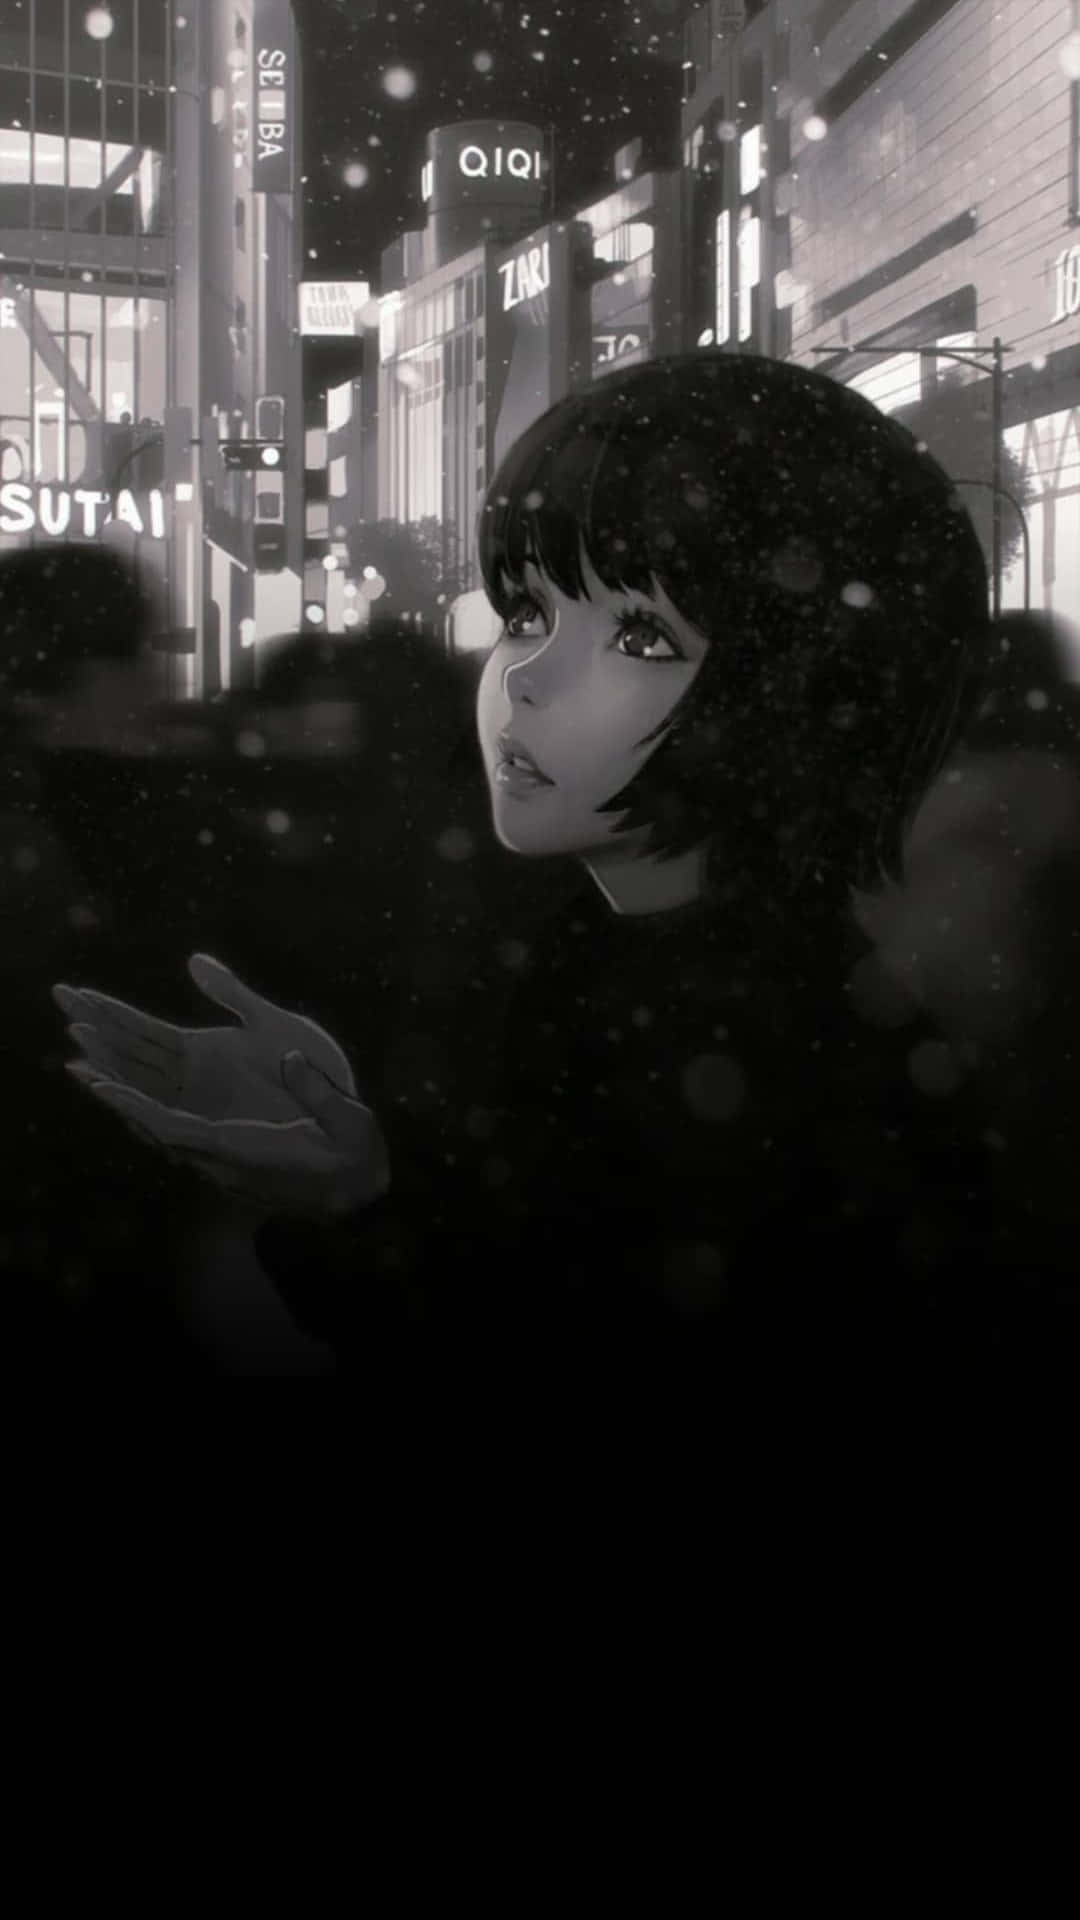 Unpersonaje De Anime Femenino Detalladamente Inquietante En Una Ilustración Completamente En Blanco Y Negro. Fondo de pantalla